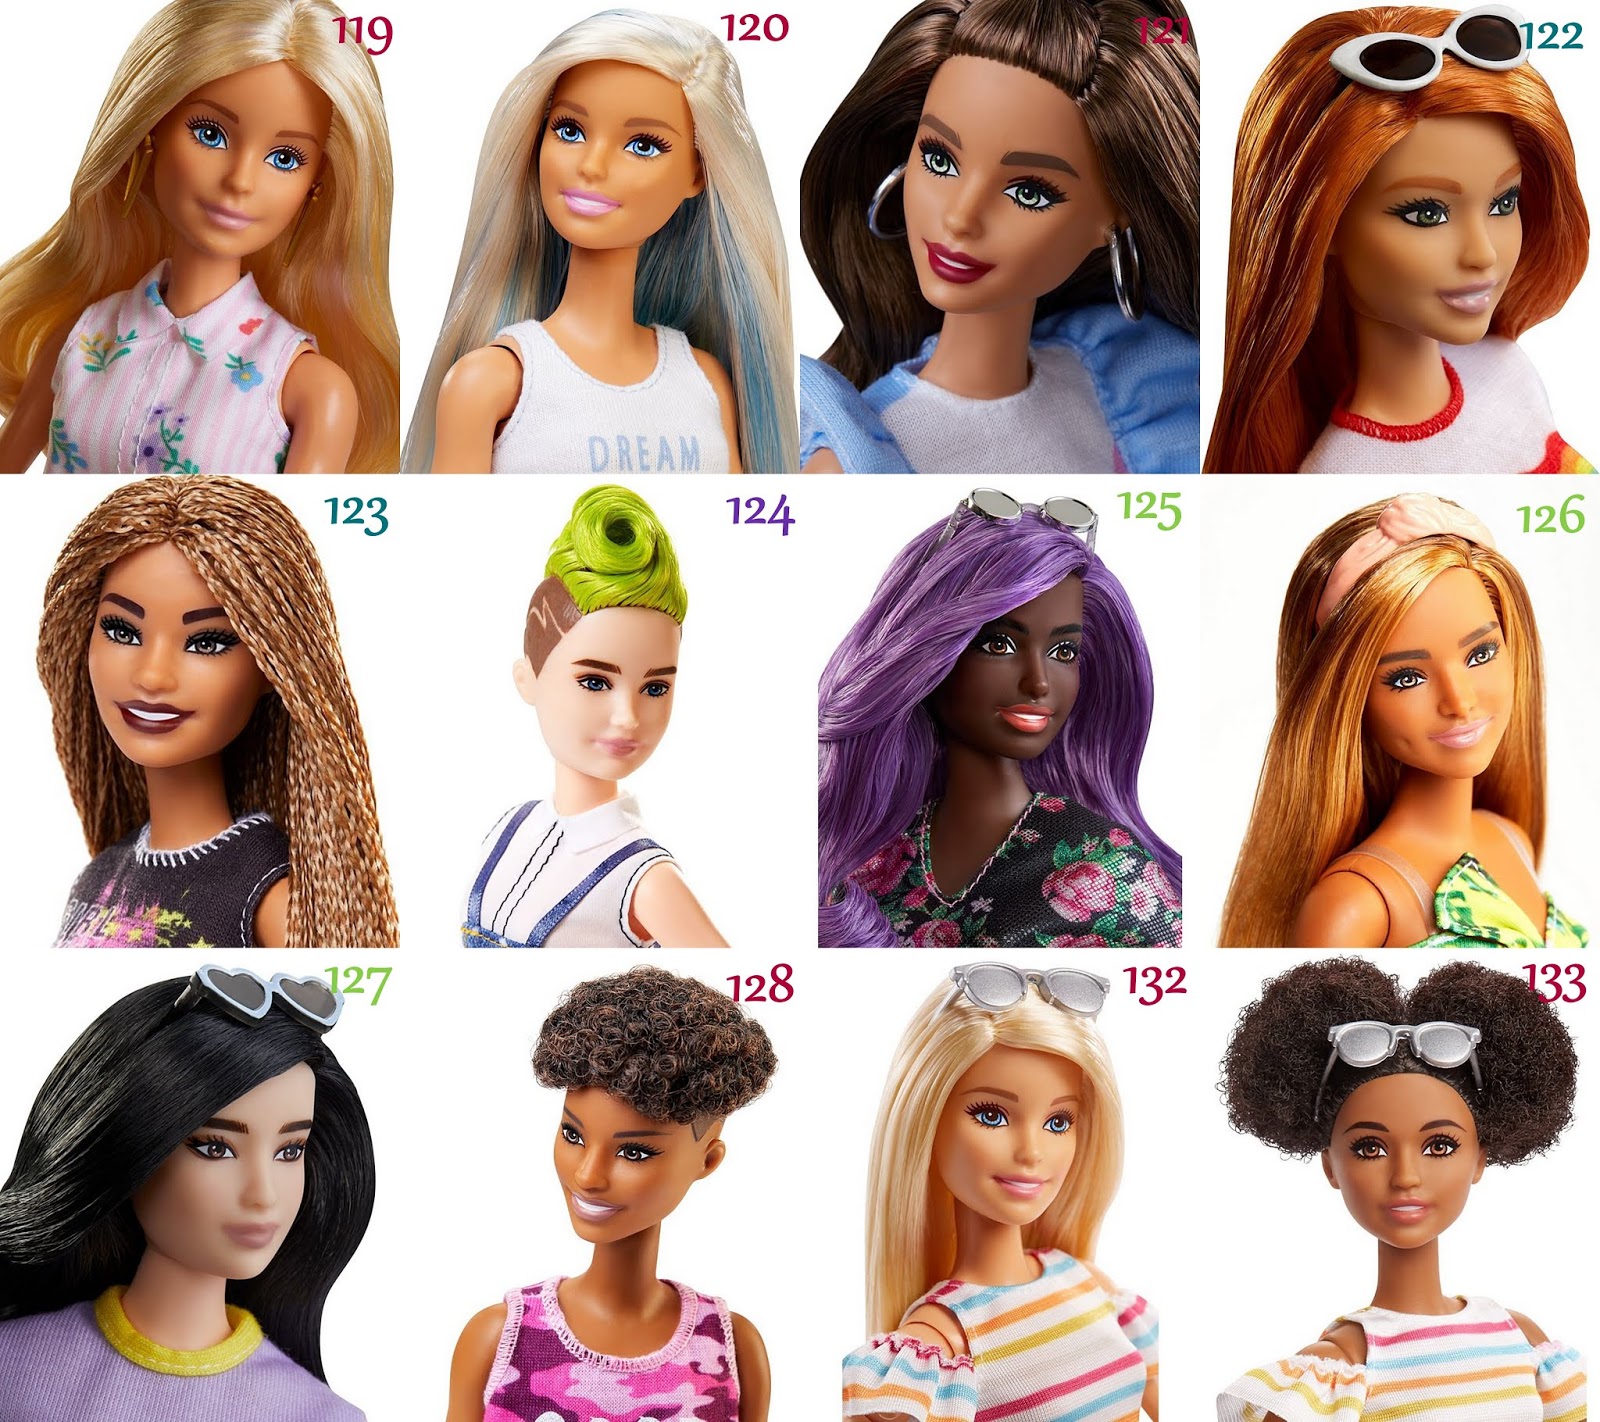 que bonito Yohanita!: Barbie Fashionistas 2019: wave 2. Doll #123 y #126